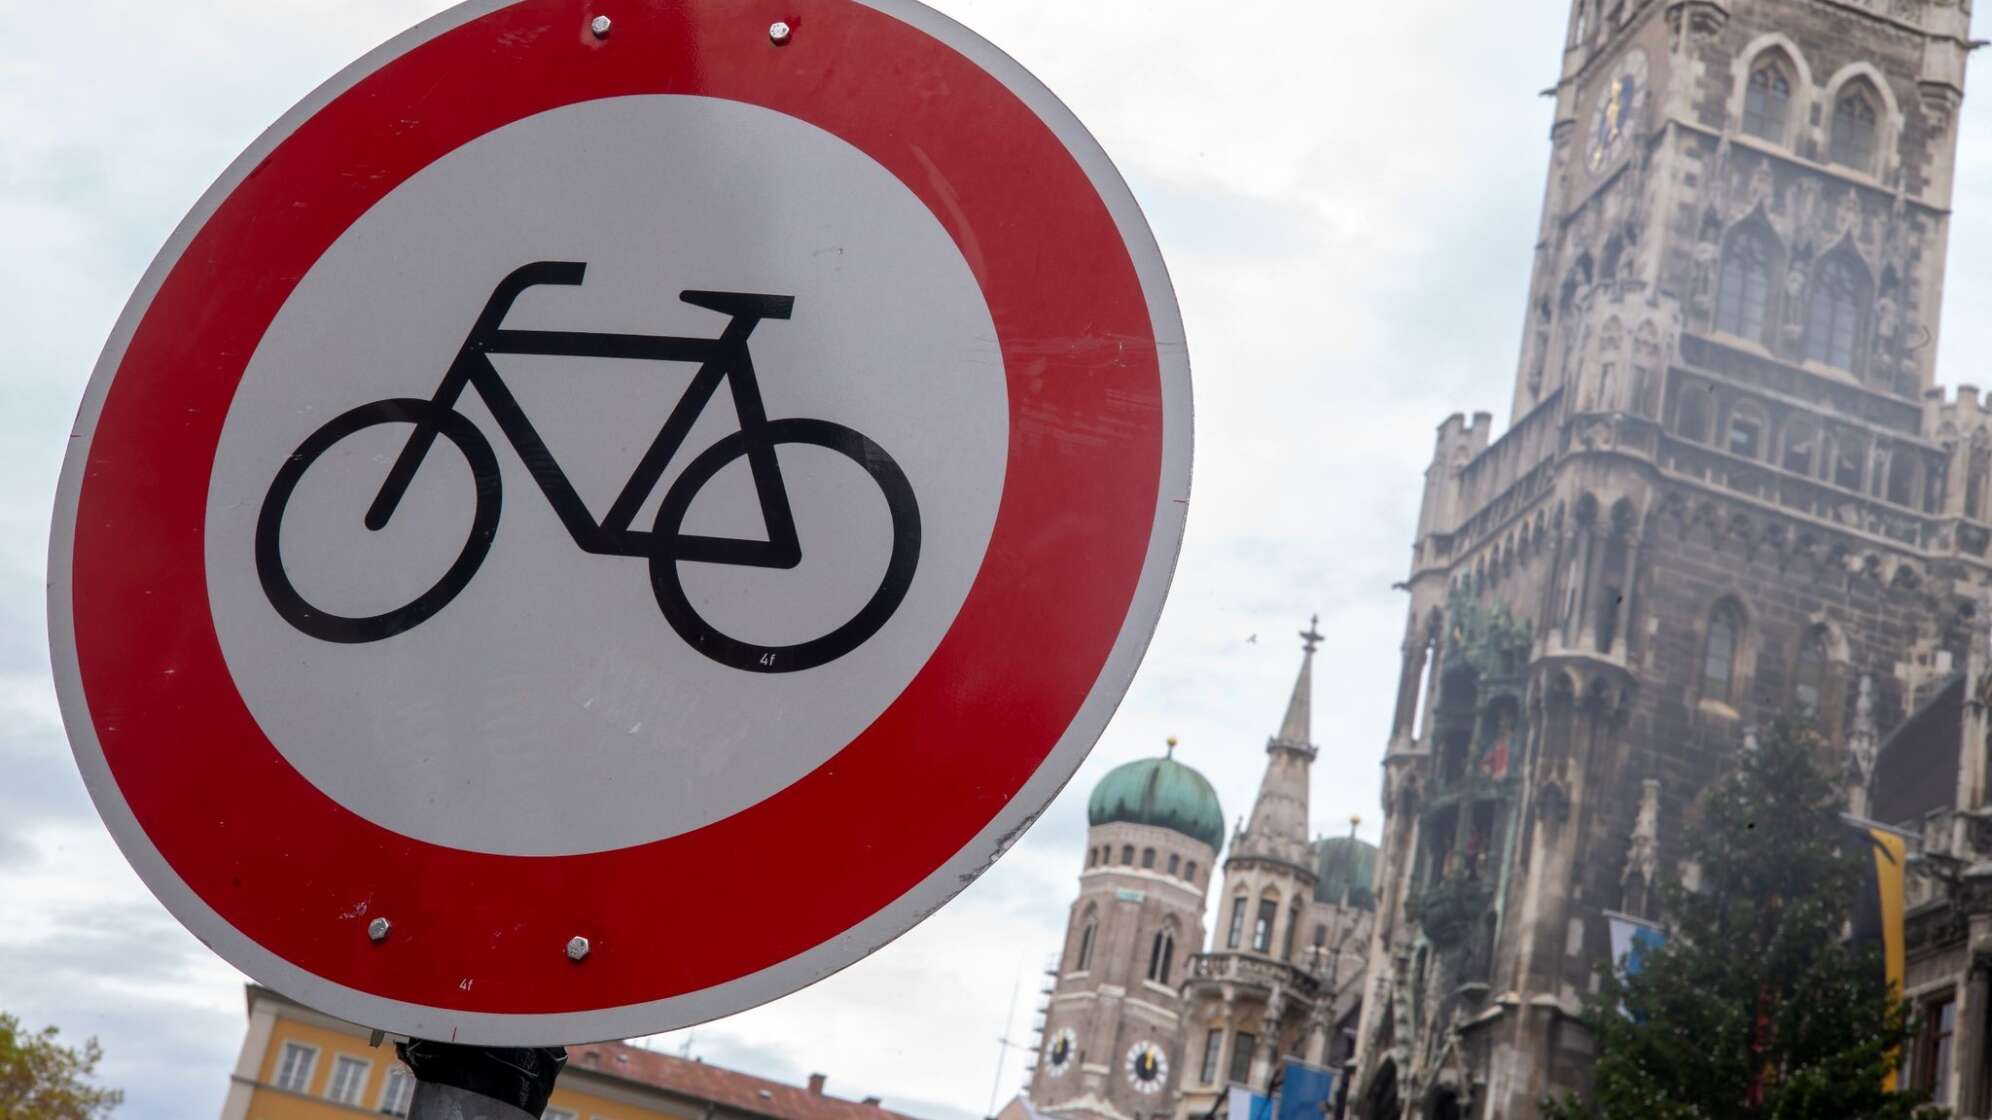 Radfahren verboten in der Innenstadt